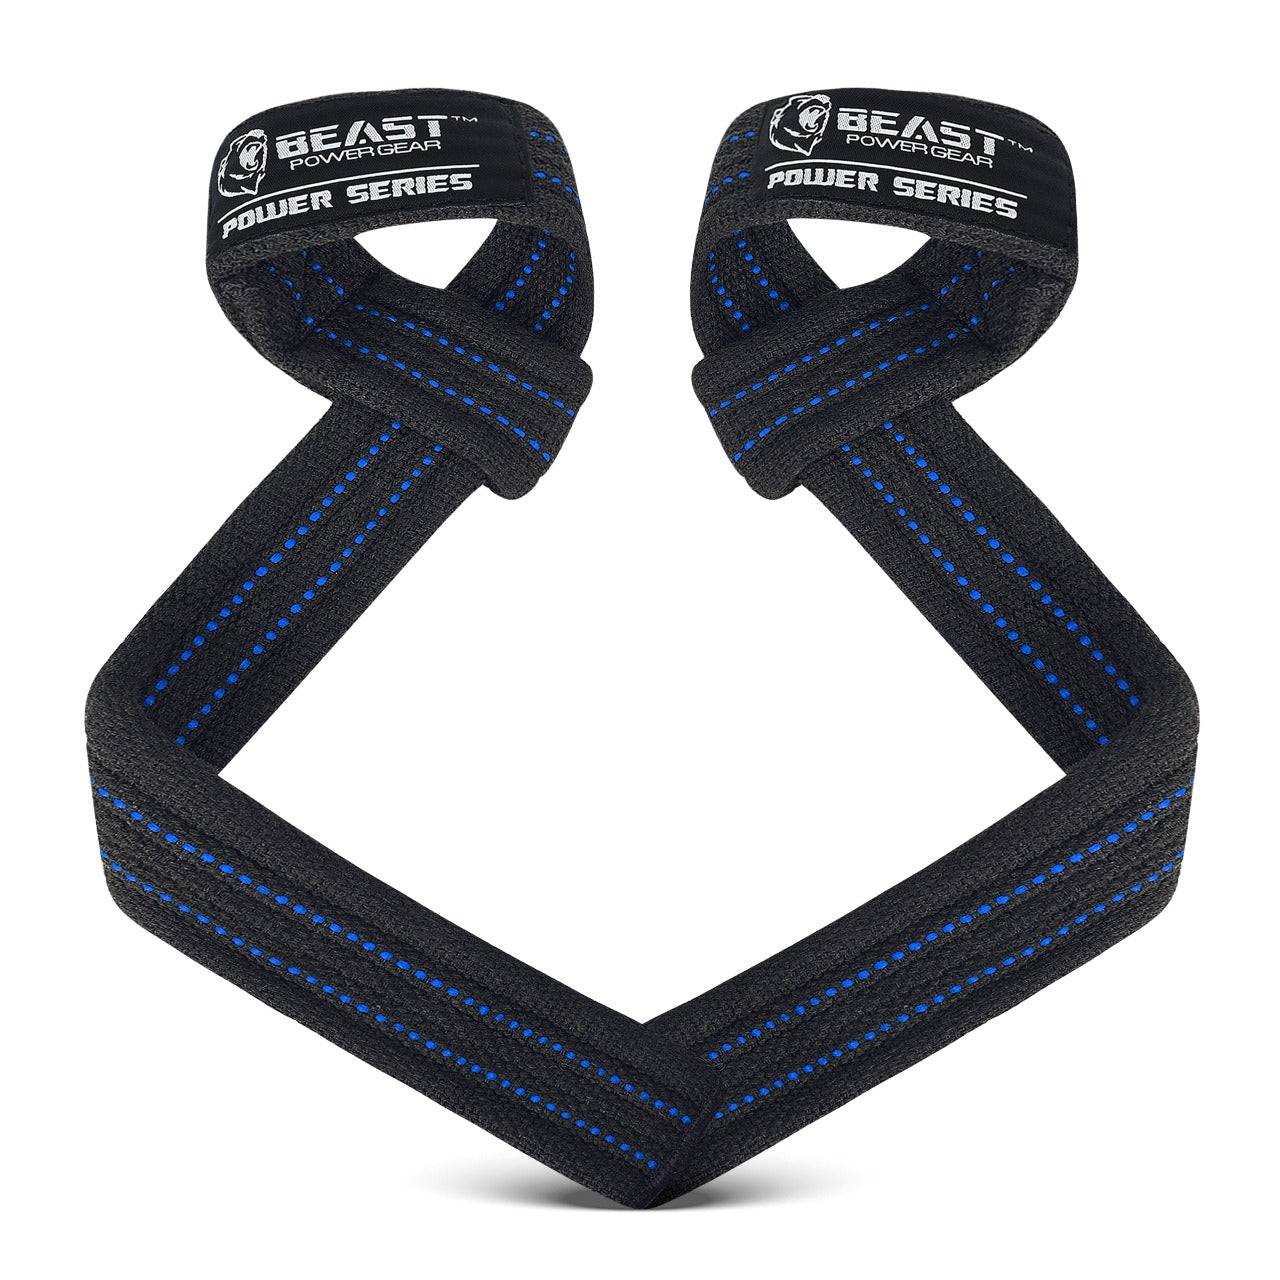 Buy Beast Gear Wrist Wraps Heavy Duty Professional Standard Weight